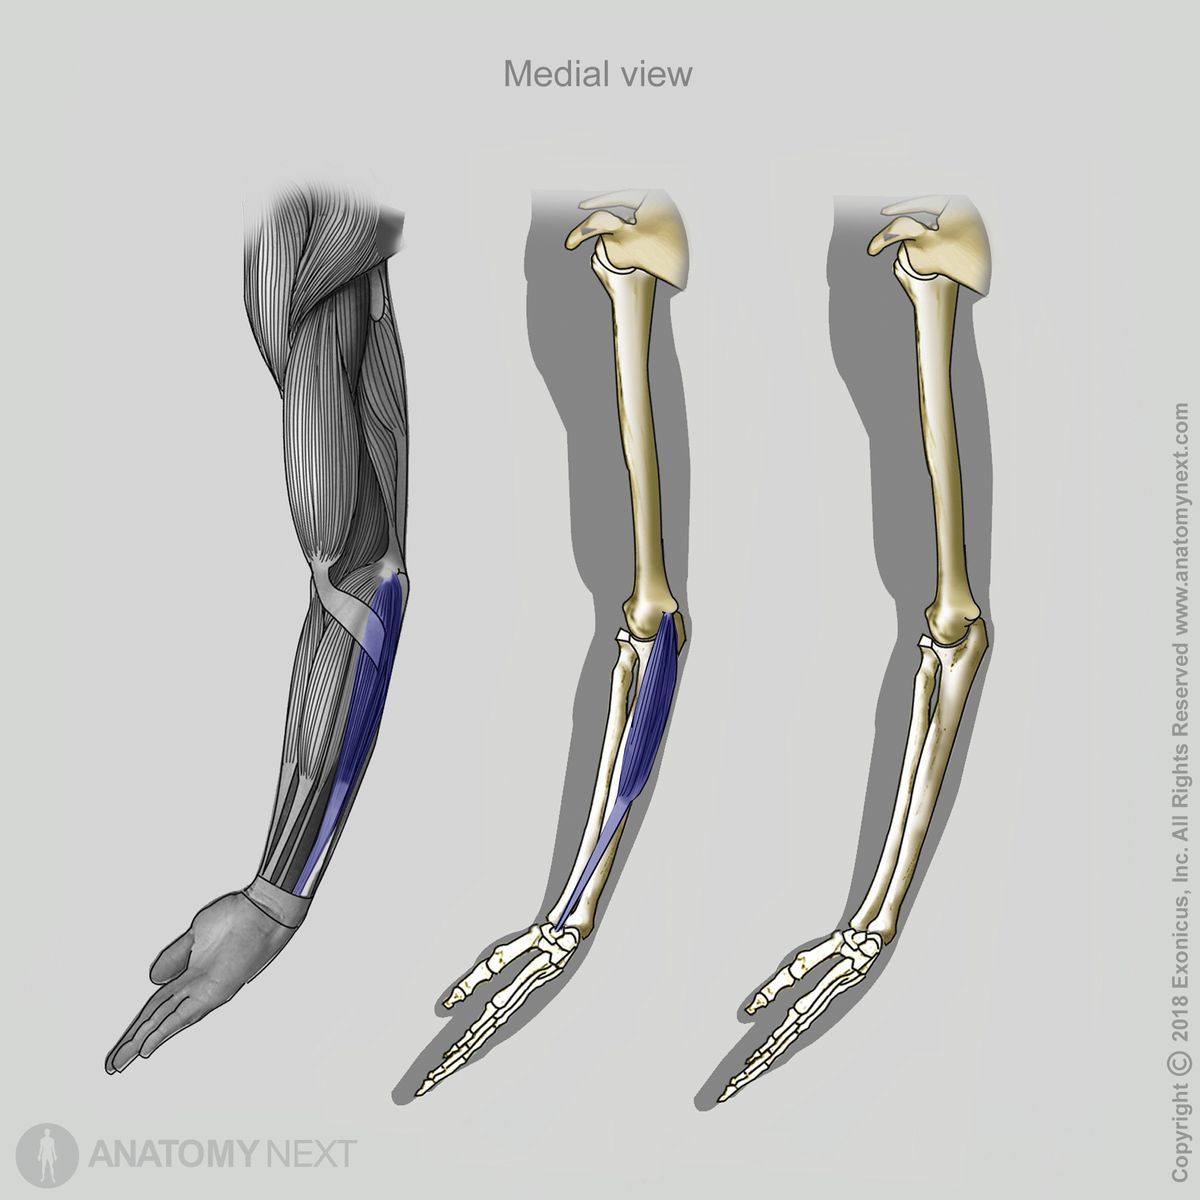 Flexor carpi ulnaris, Medial view of flexor carpi ulnaris, Forearm muscles, Muscles of forearm, Muscles of upper limb, Arm muscles, Anterior forearm compartment, Anterior compartment muscles, Anterior compartment of forearm, Human muscles